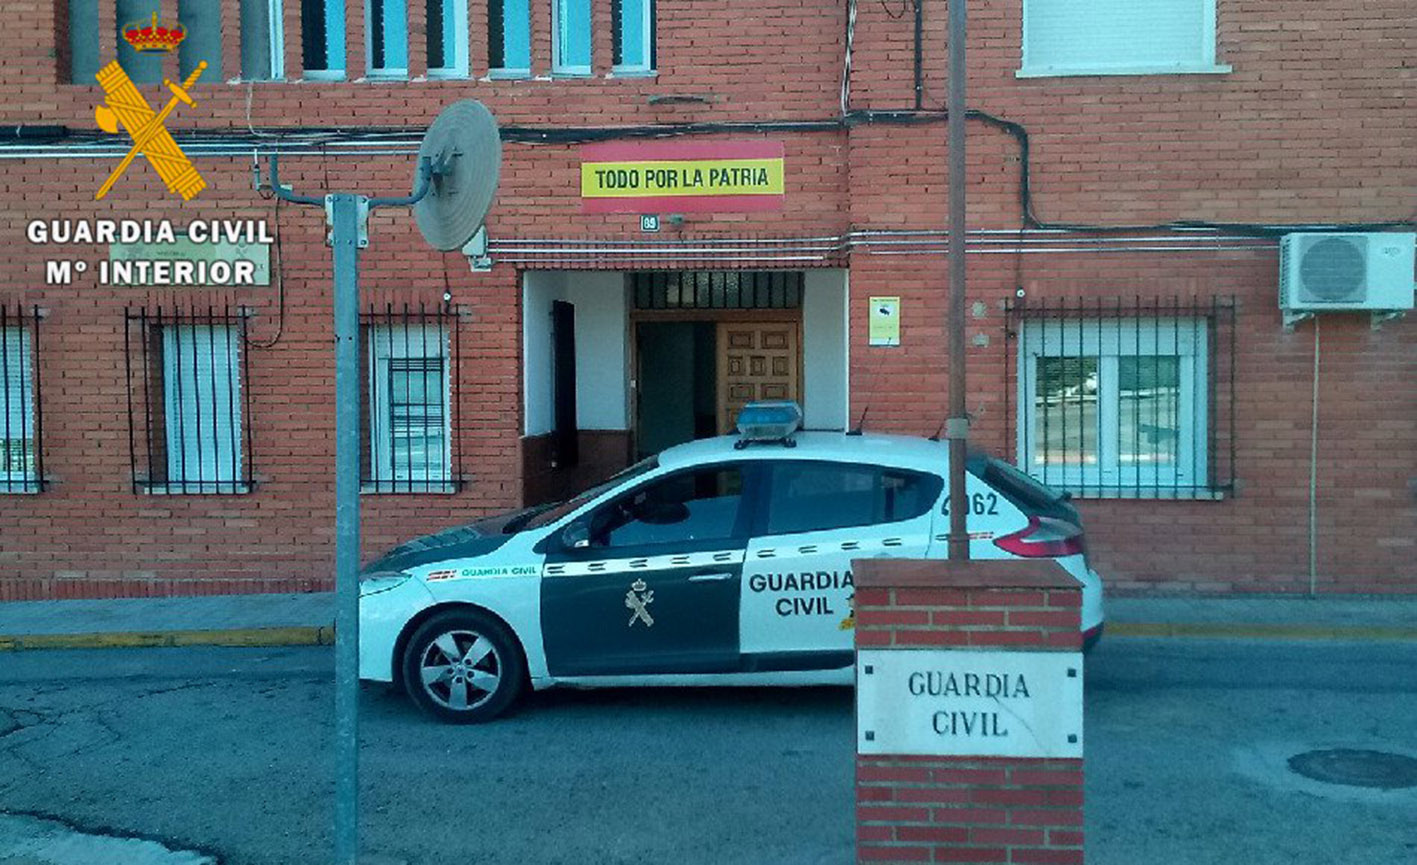 La Guardia Civil de Villacañas resolvió los 12 delitos cometidos en la localidad desde principios de año.